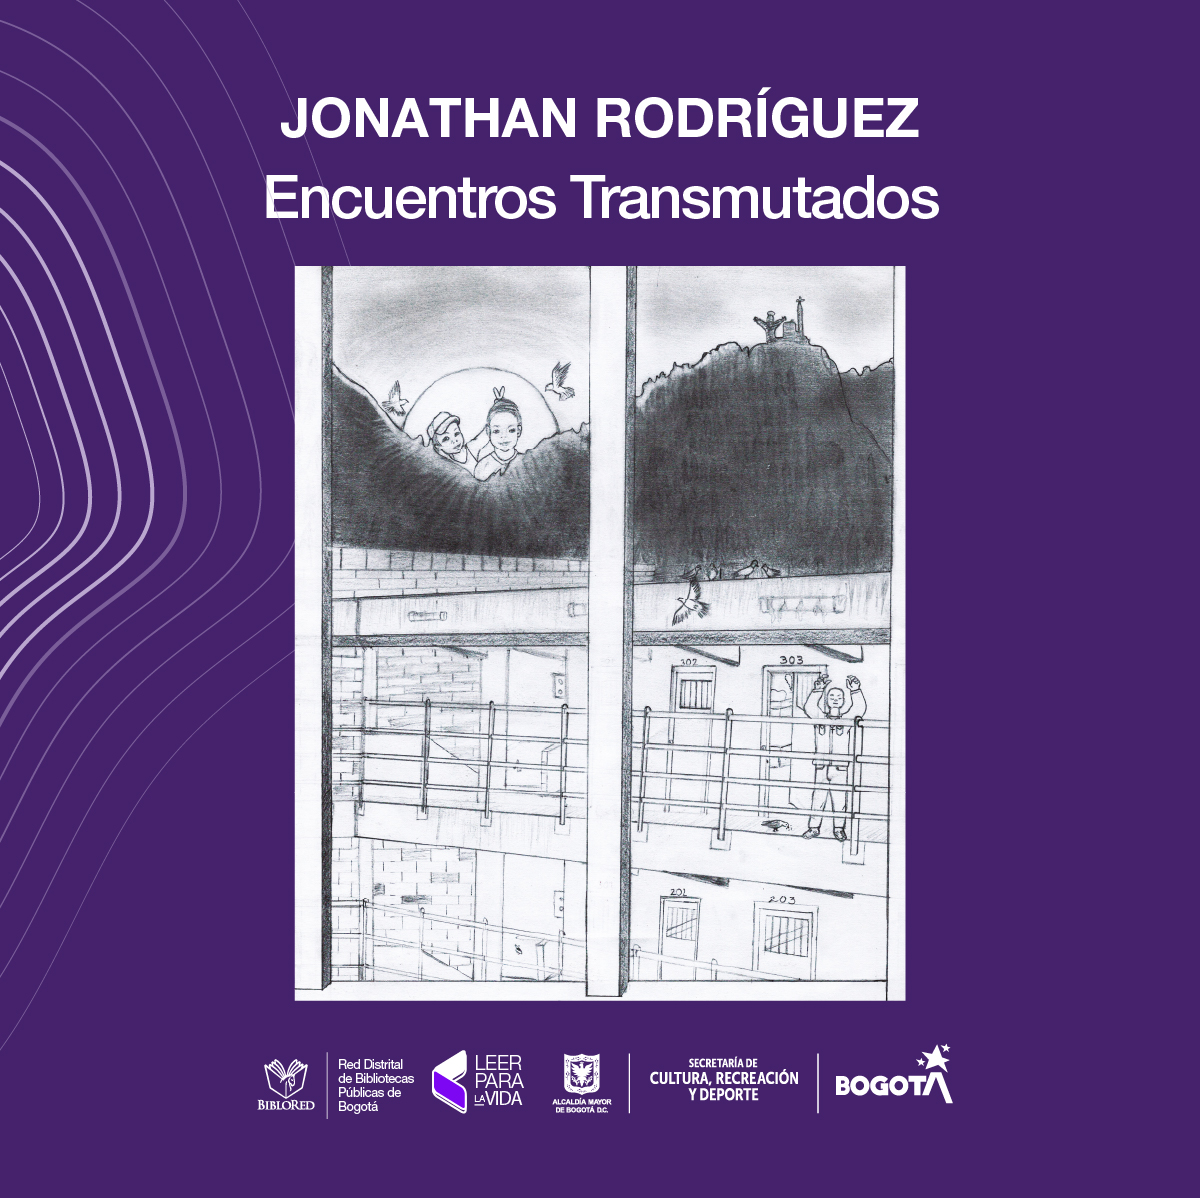 Jonathan Rodríguez